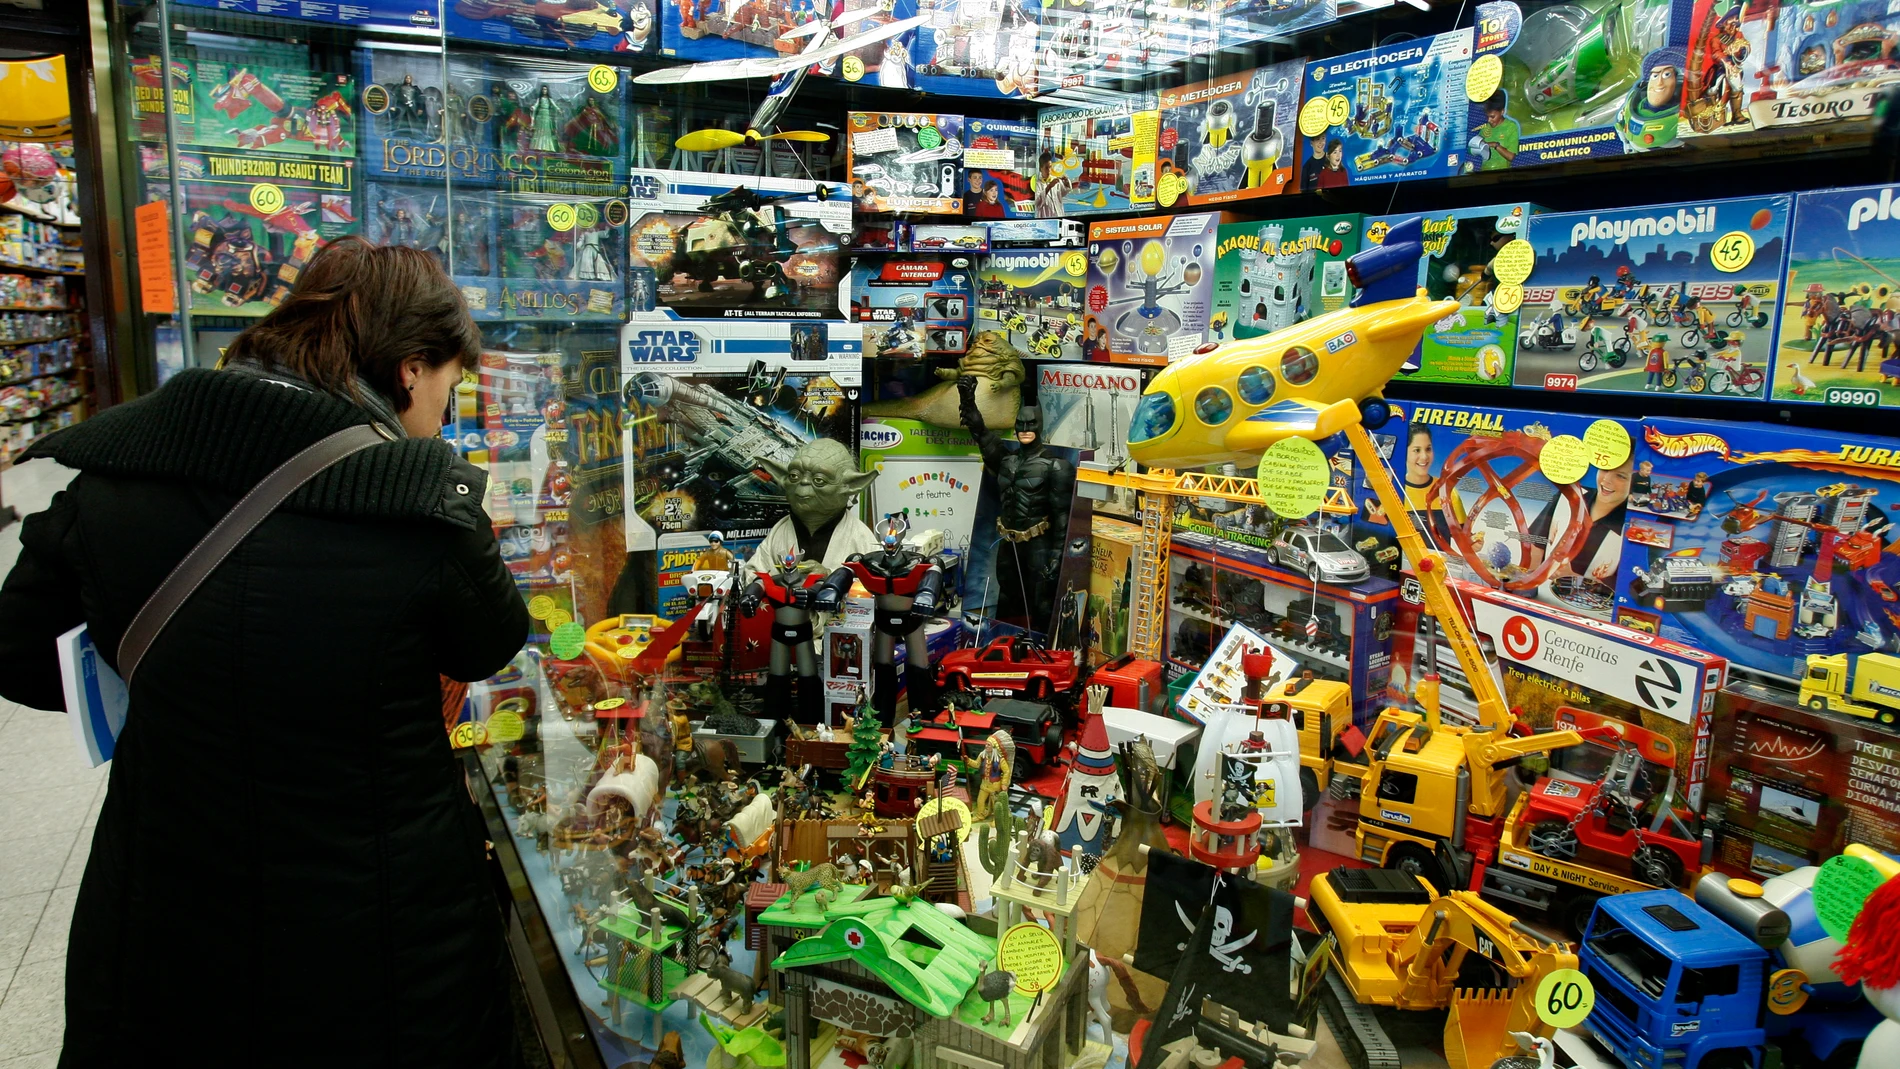 Una mujer contempla los artículos expuestos en el escaparate de una juguetería